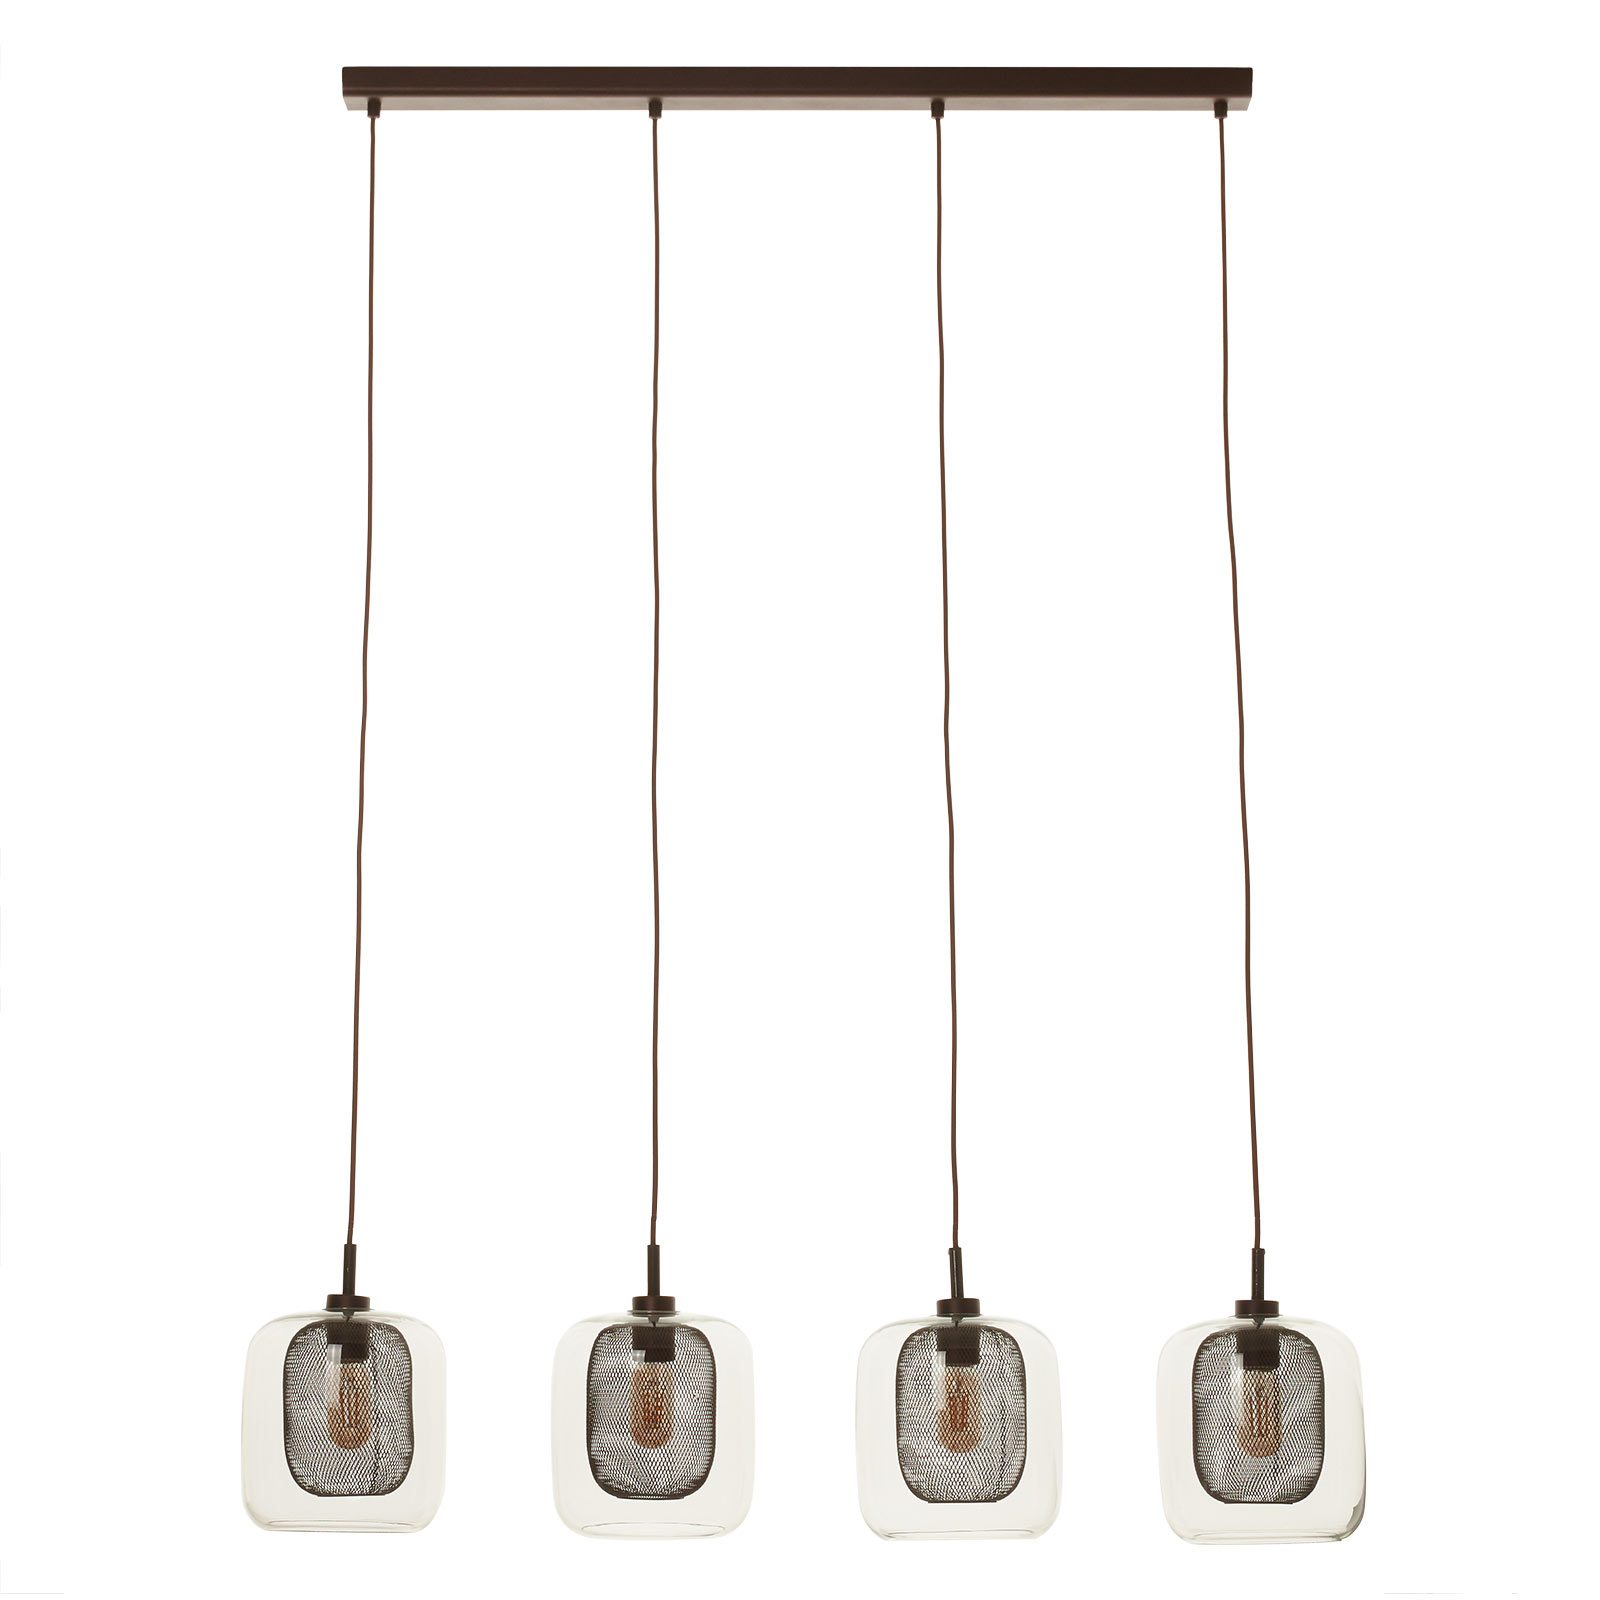 Fox pendant light, 4-bulb, double shades, glass